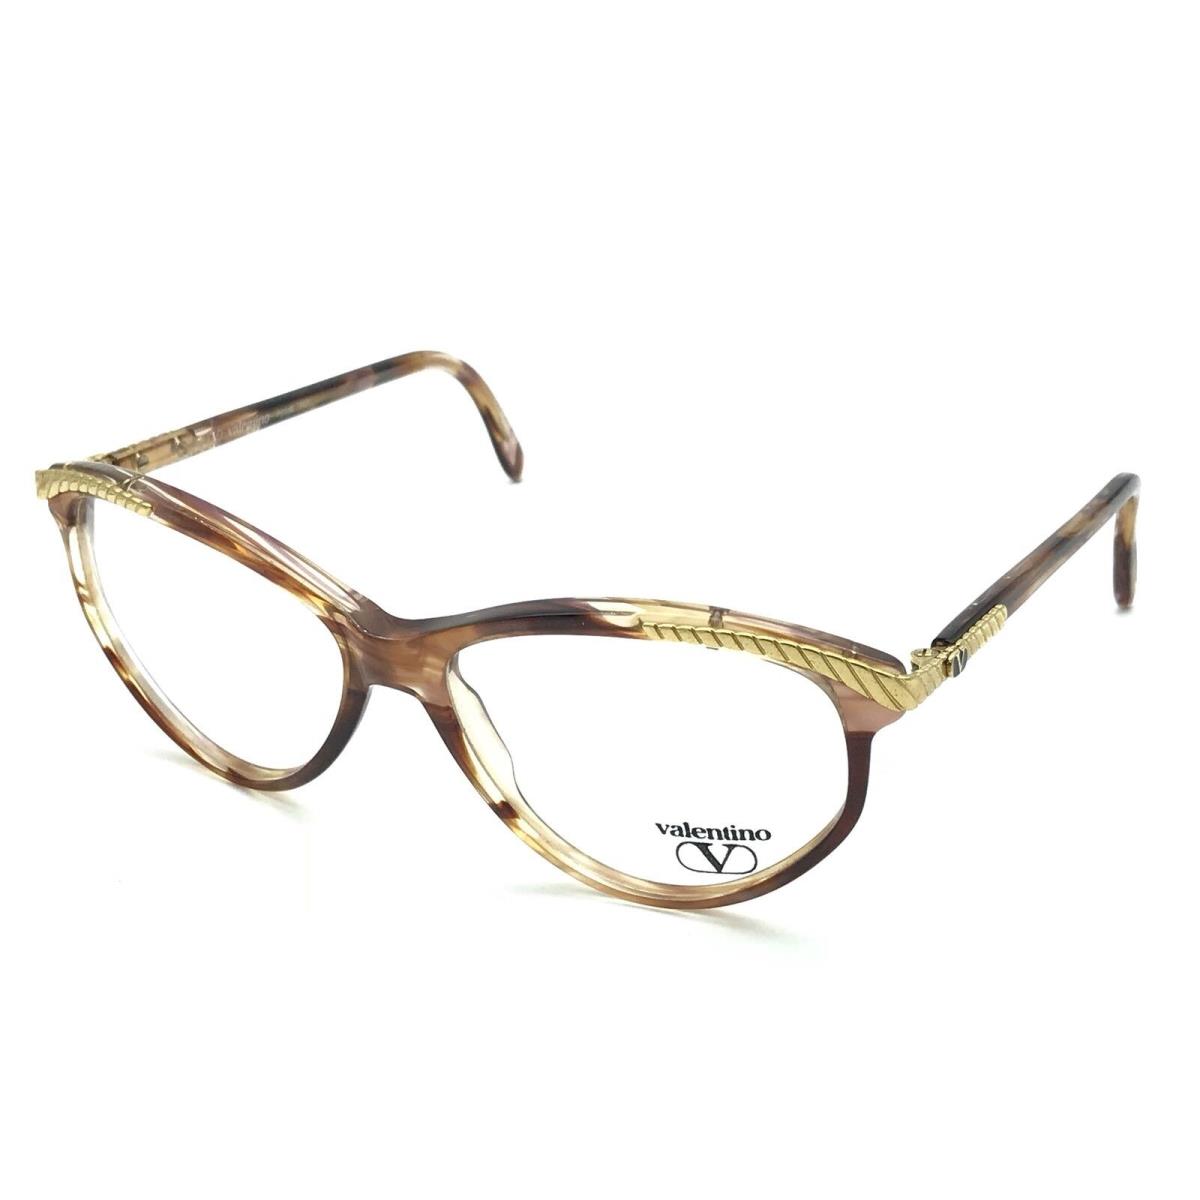 Valentino eyeglasses  - 157 , Tortoise / Gold Frame